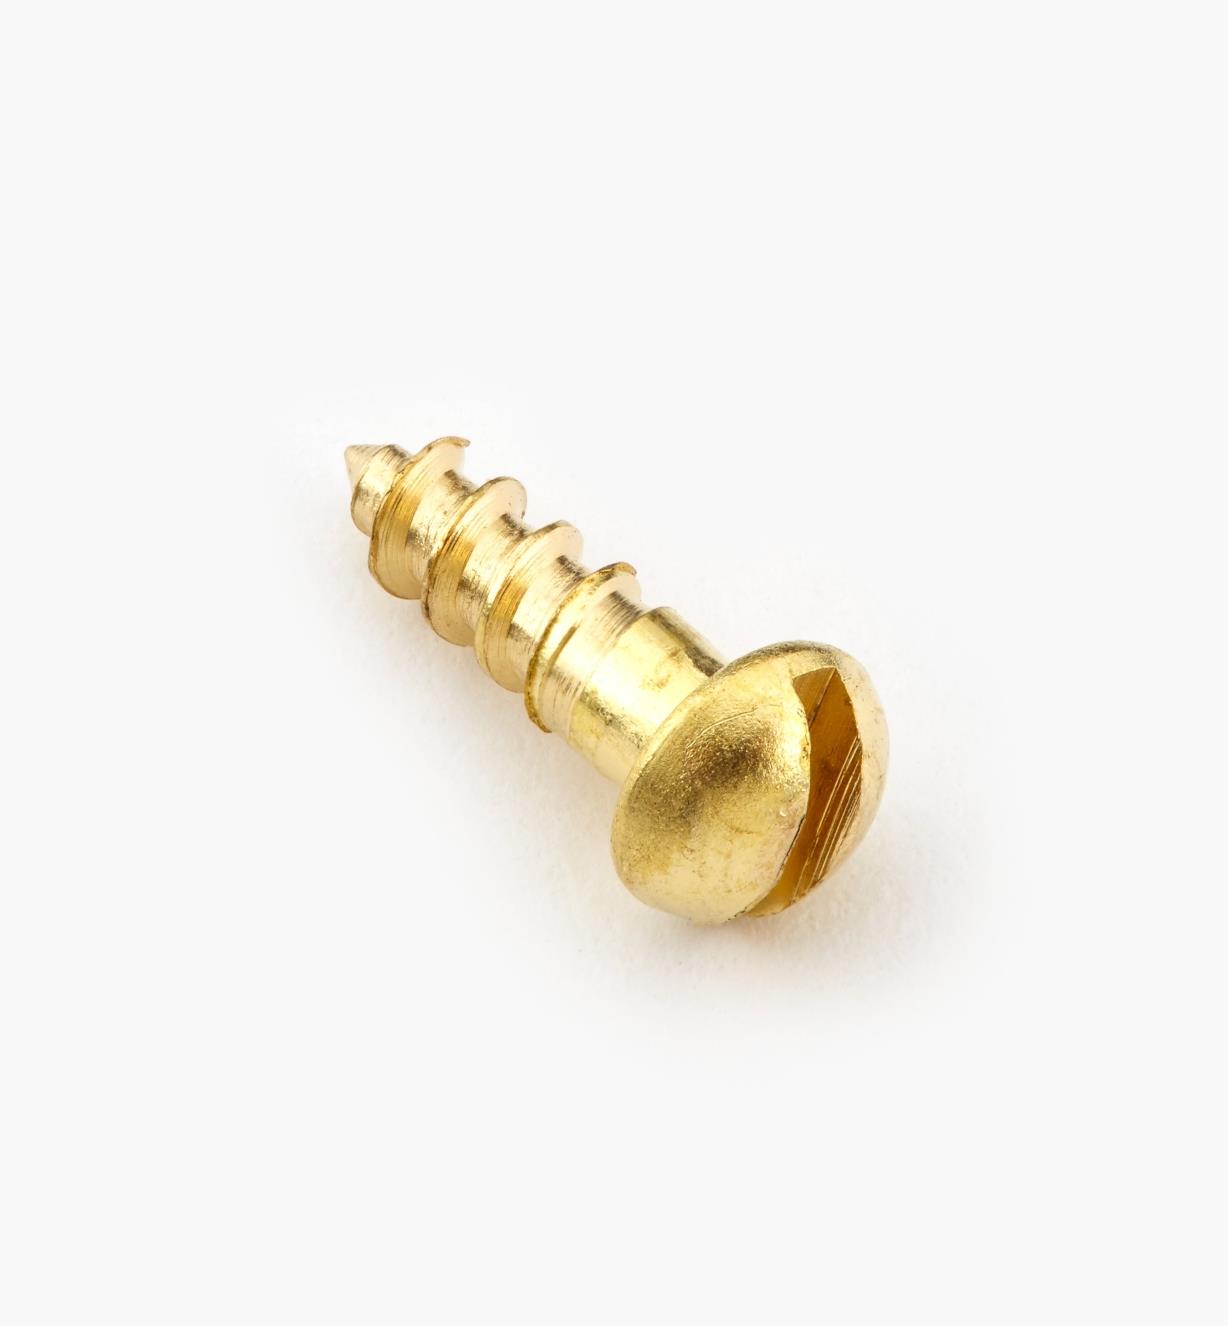 91Y0402 - #4, 3/8" Round Brass Screws, pkg. of 100